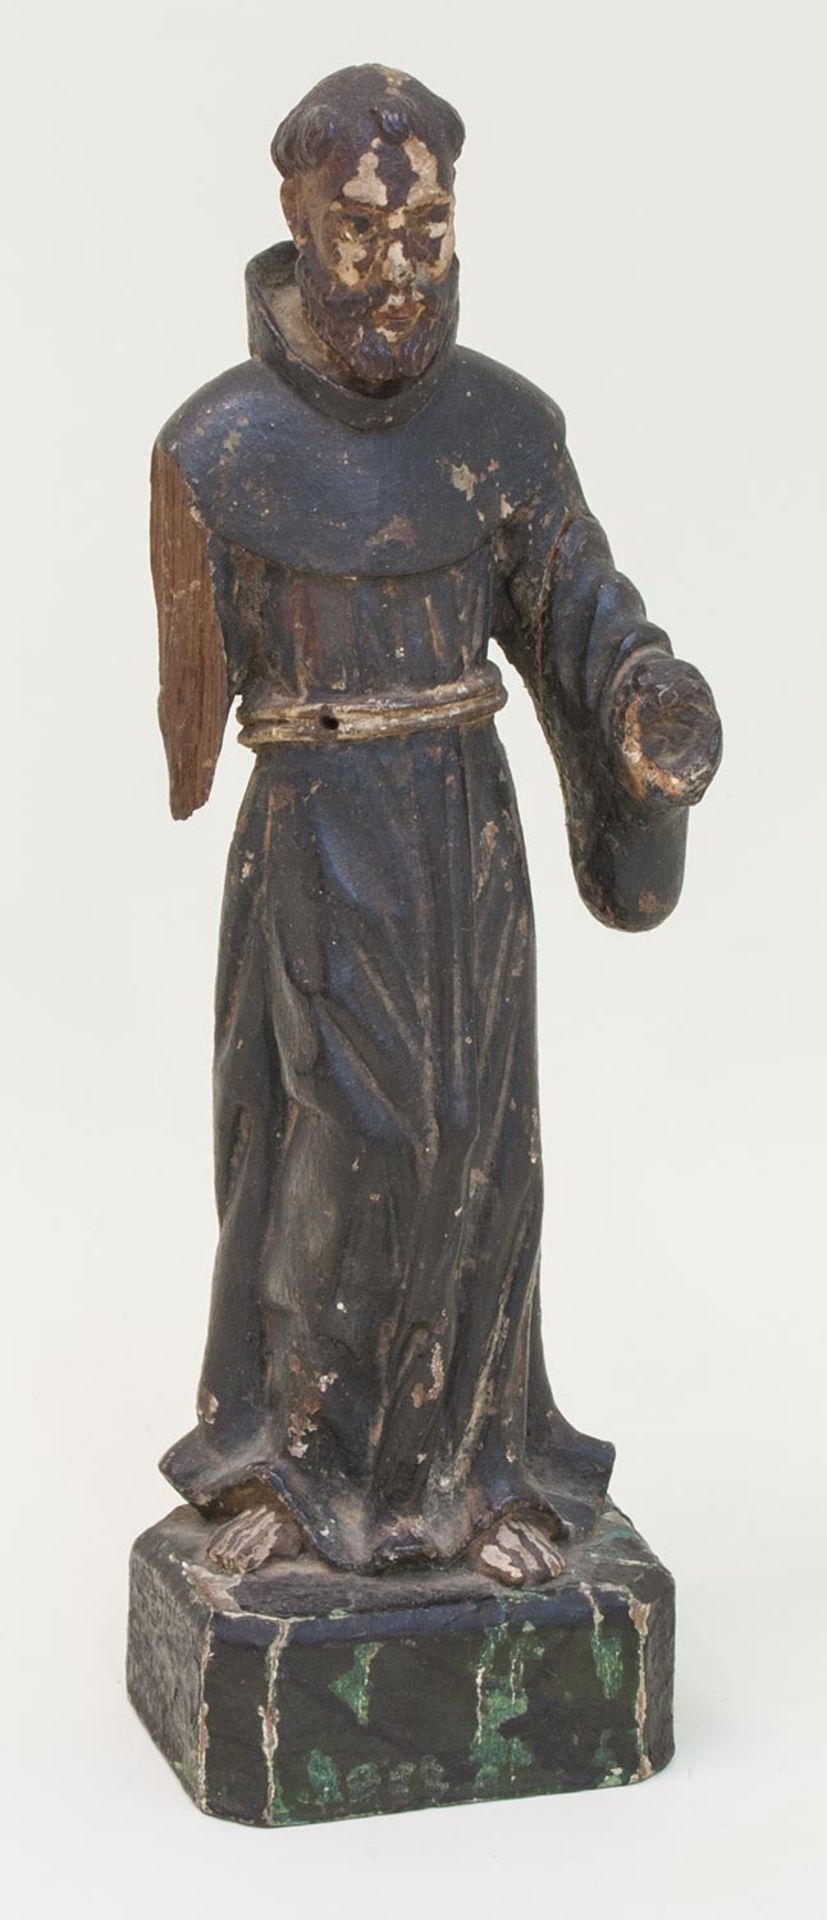 Heiligenfigurgeschnitzter Mönch, ohne Insignien (Arm u. Hand fehlt), wohl Spanien 15. Jh., H. 52